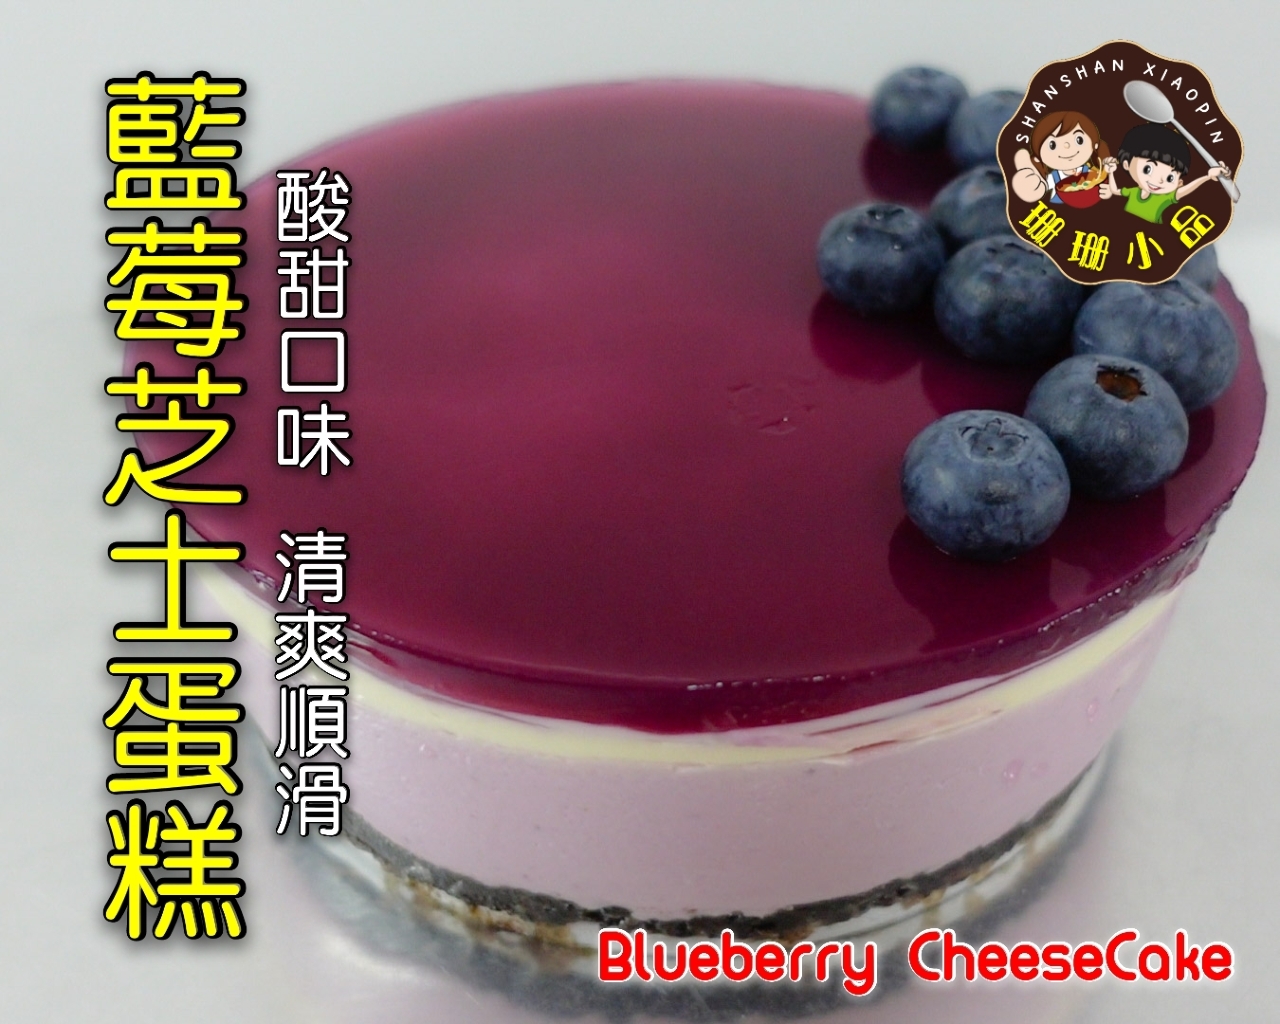 藍莓芝士蛋糕，酸甜口味搭上香濃芝士，清爽順滑 - Blueberry Cheese Cake